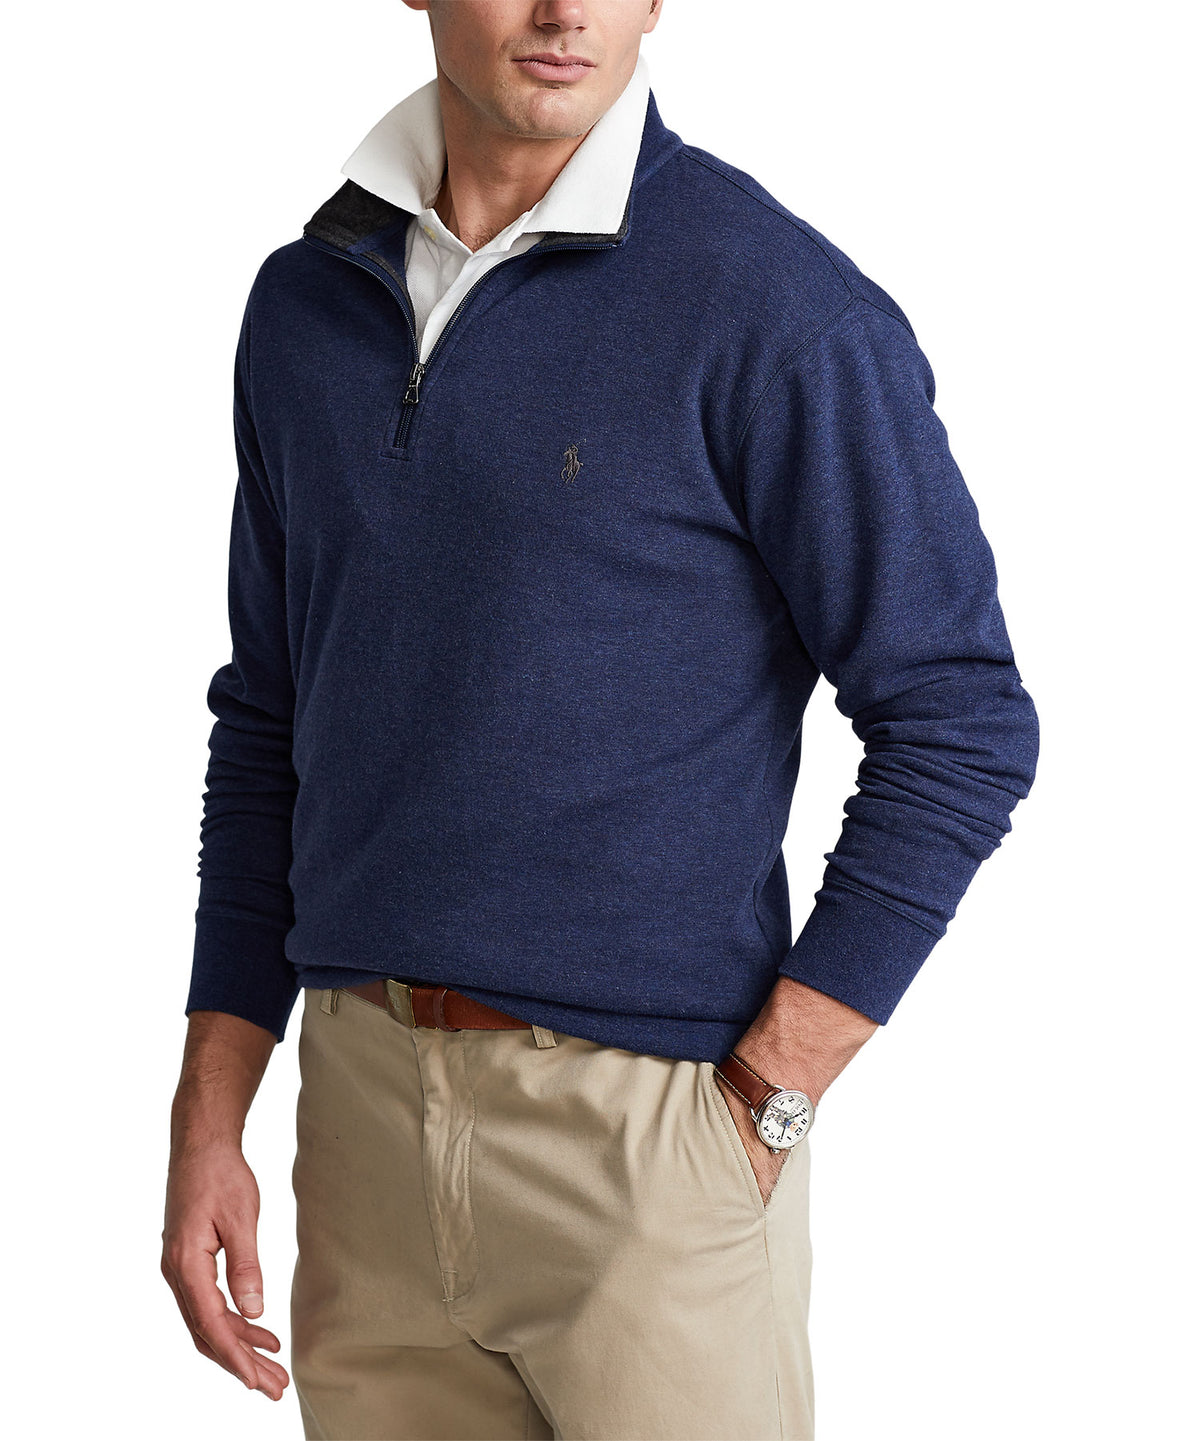 Polo Ralph Lauren Lux Jersey Half-Zip Pullover, Men's Big & Tall